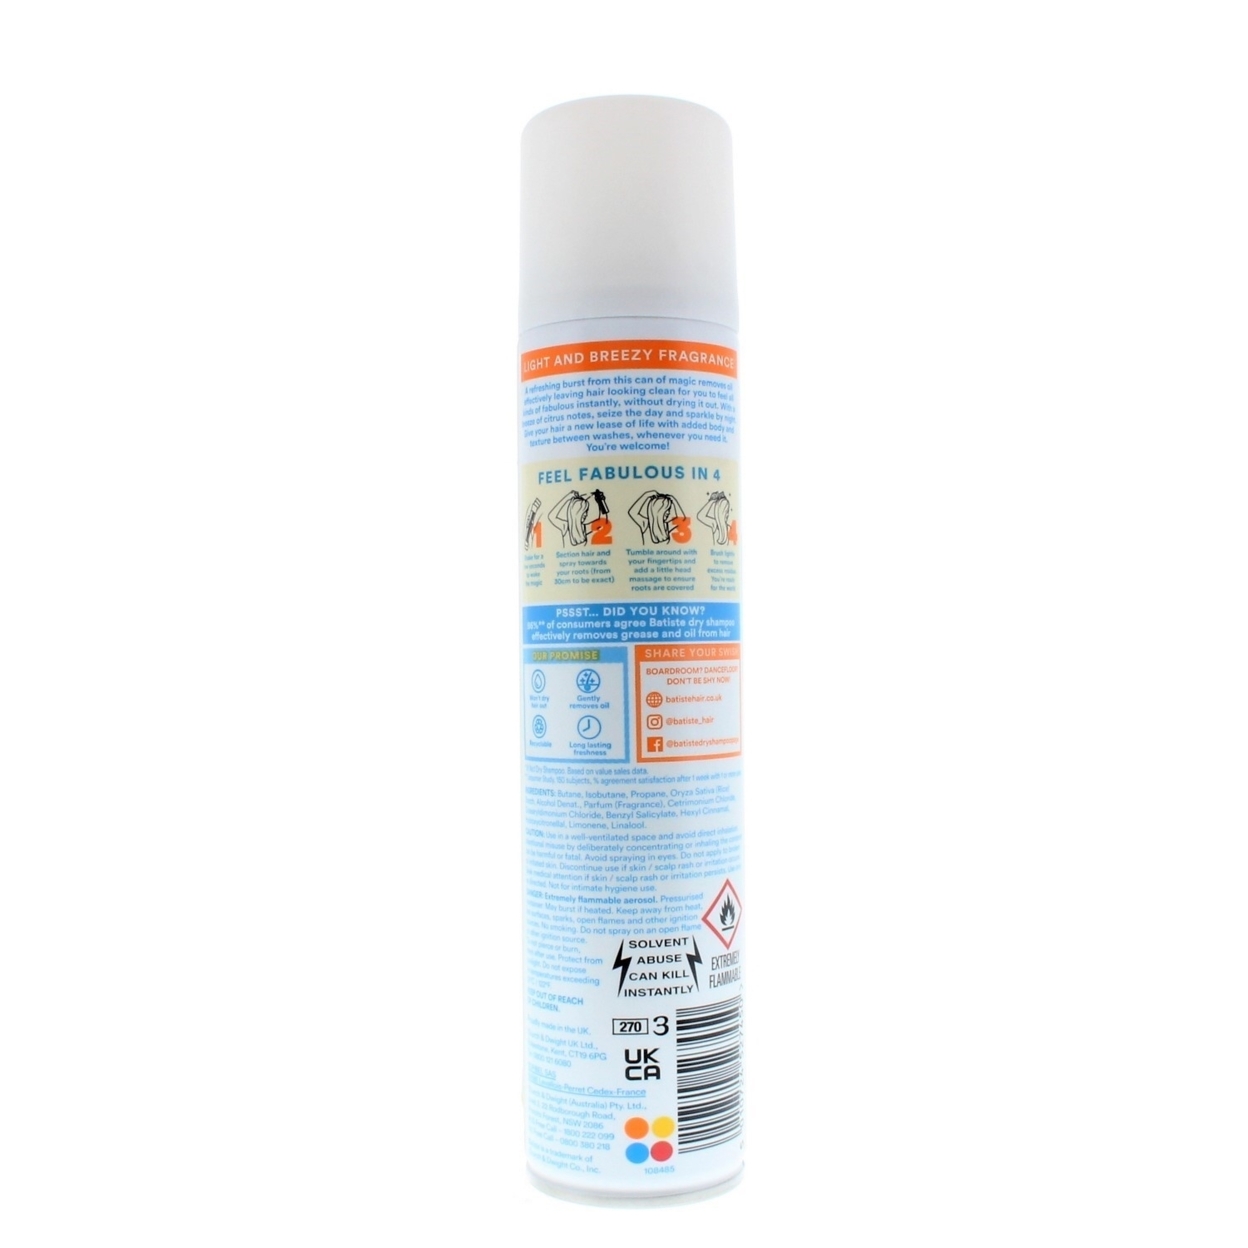 Batiste Instant Hair Refresh Dry Shampoo Fresh Breezy Citrus 200ml/120g